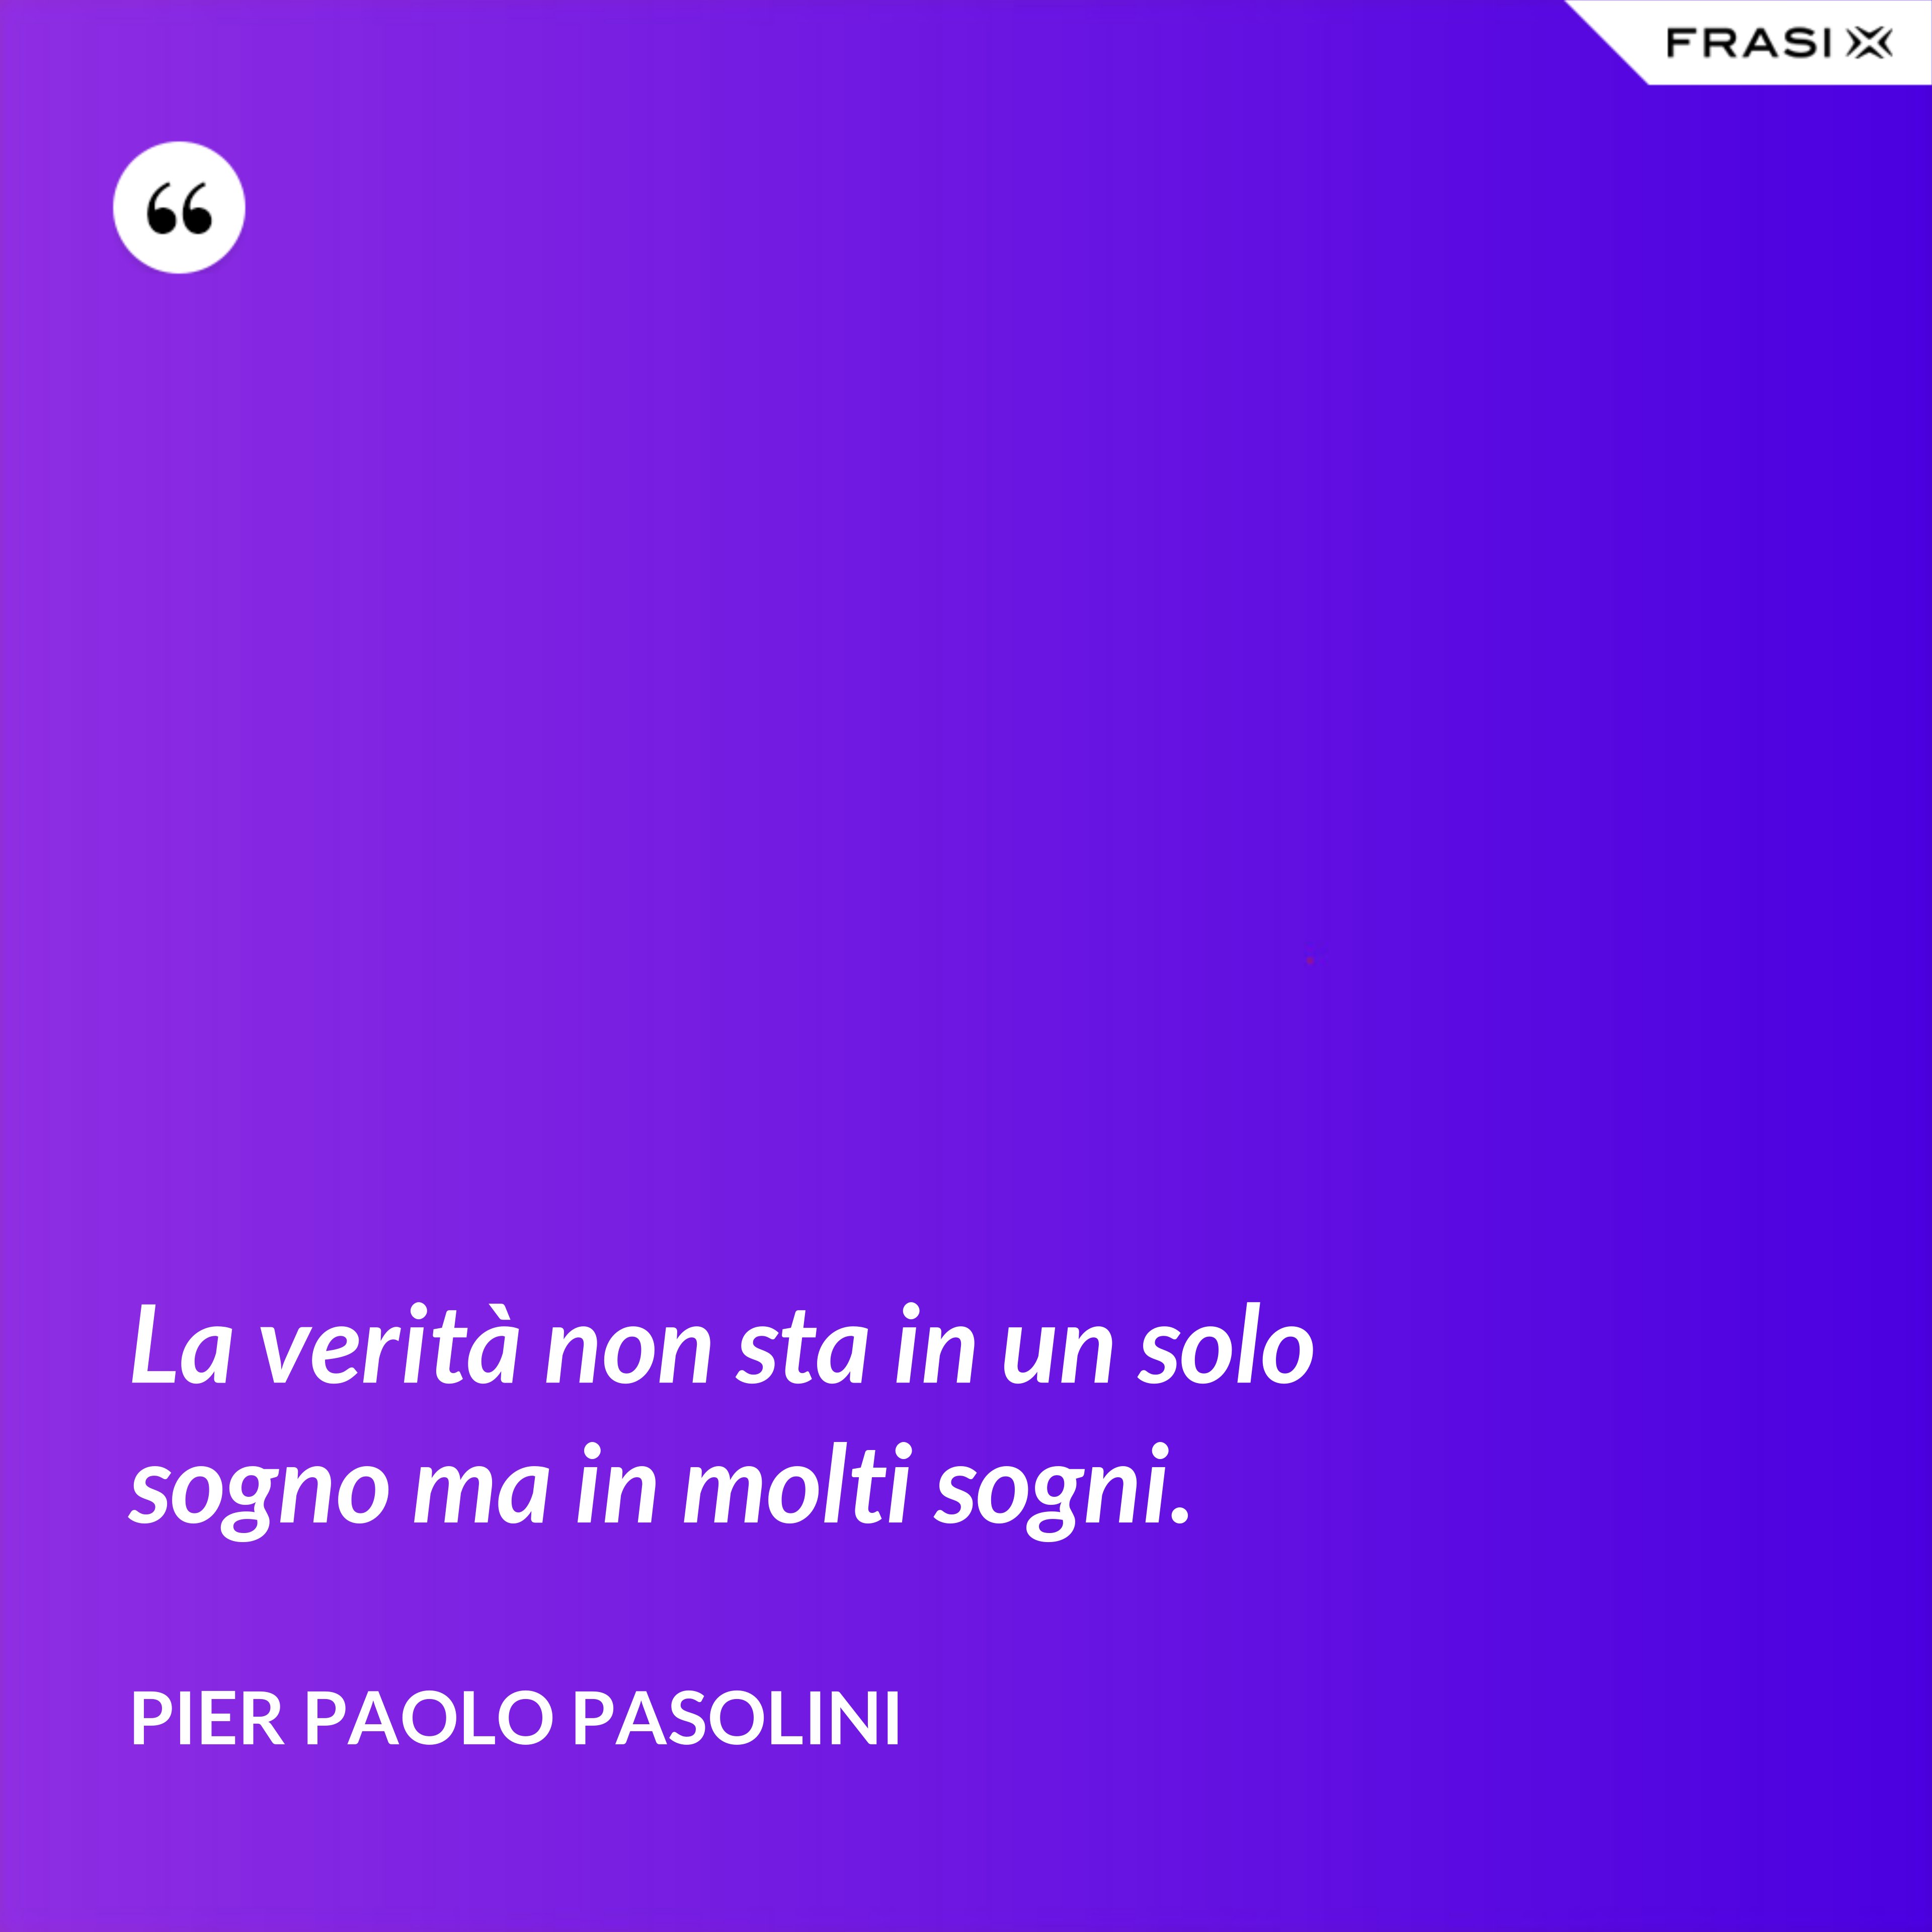 La verità non sta in un solo sogno ma in molti sogni. - Pier Paolo Pasolini